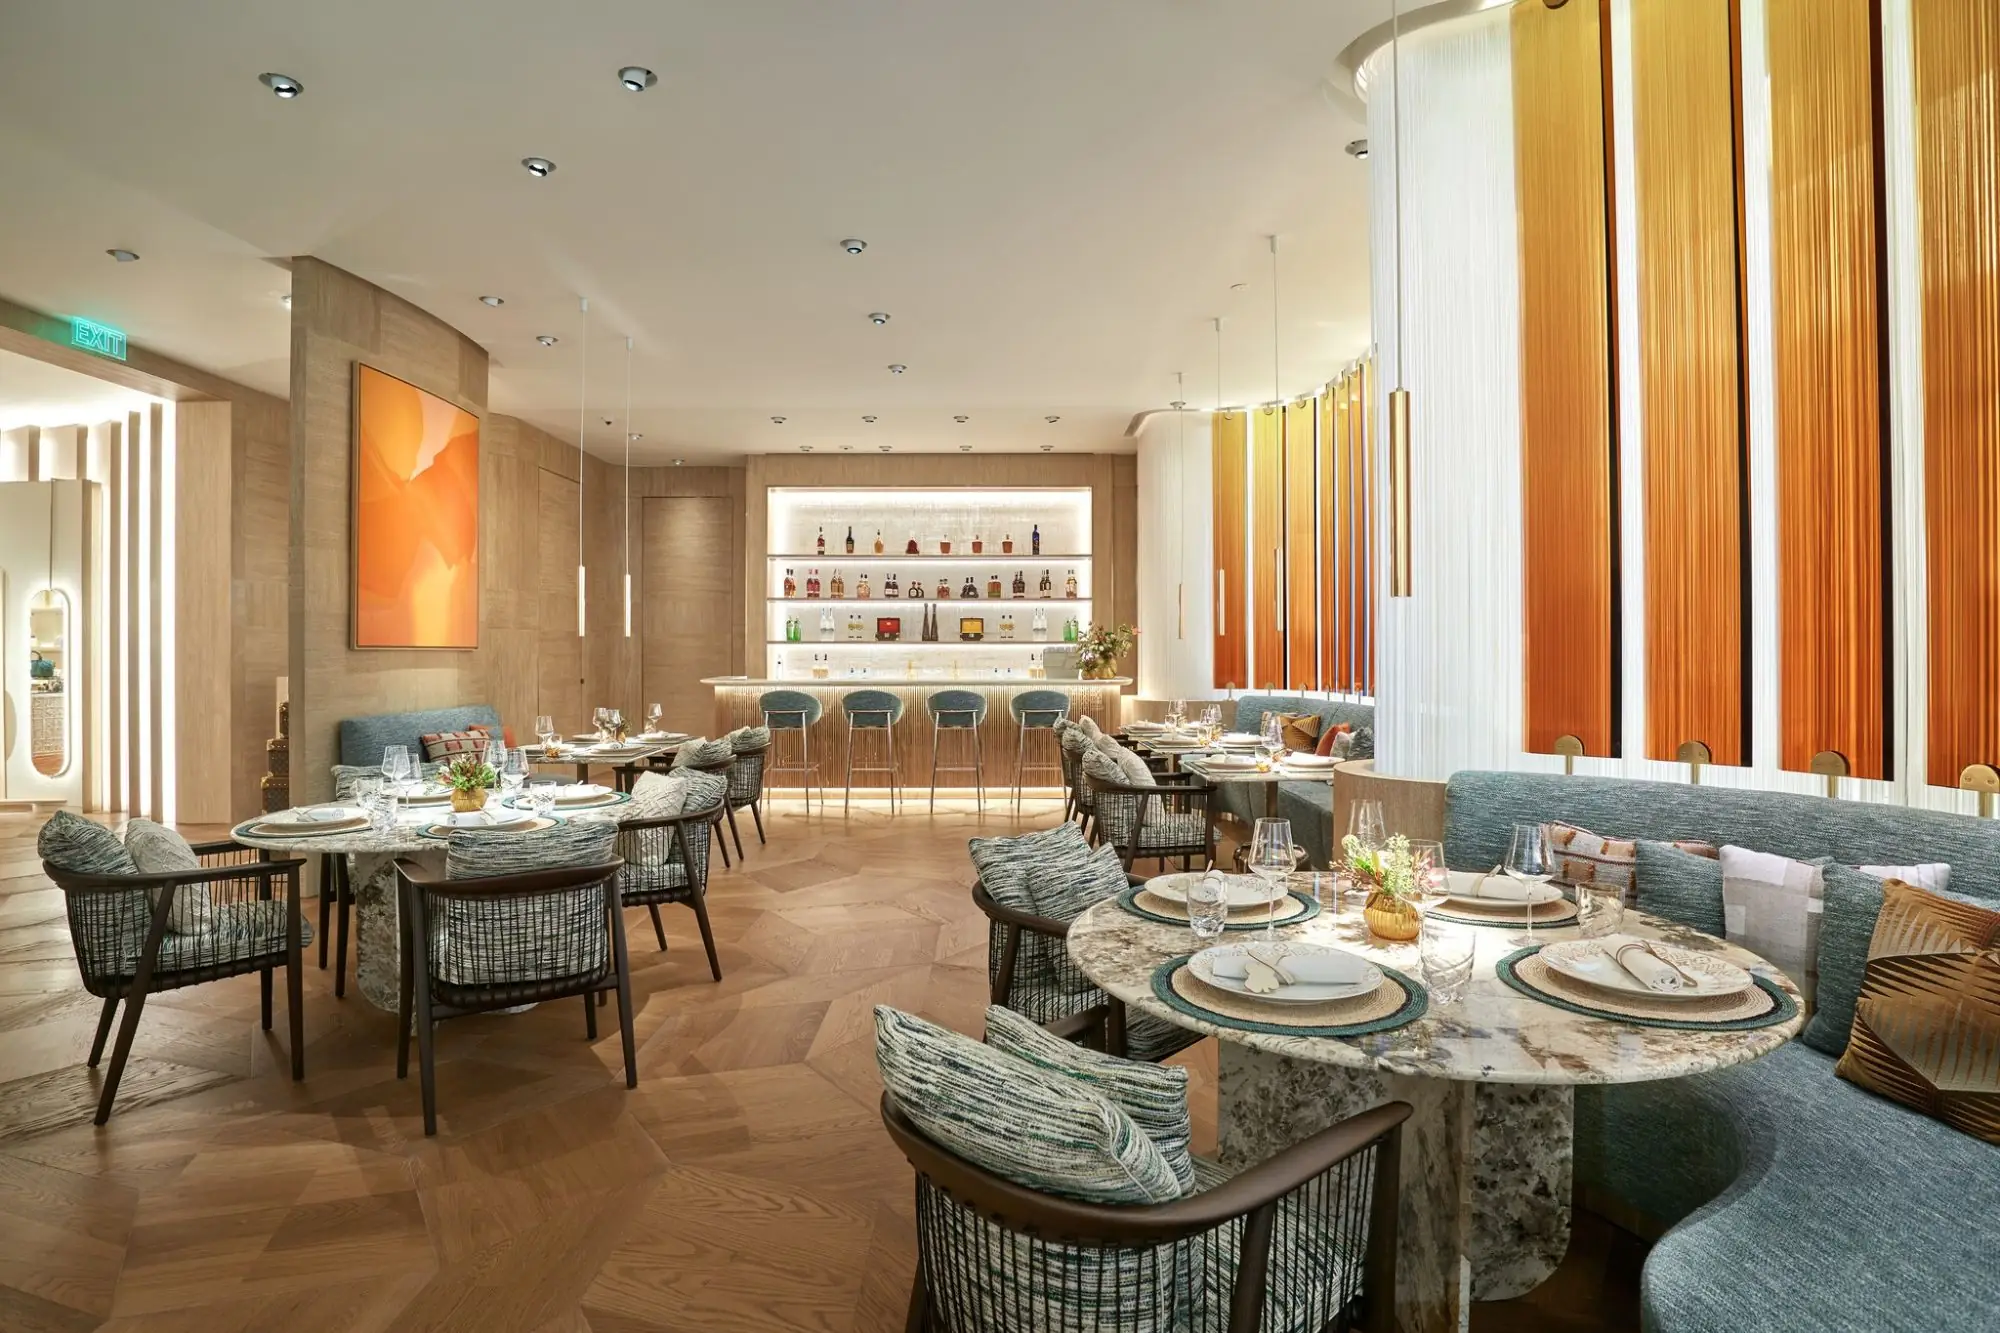 曼谷LV餐厅Gaggan at Louis Vuitton开幕！东南亚首间、由世界名厨操刀（来源：Gaysorn FB）